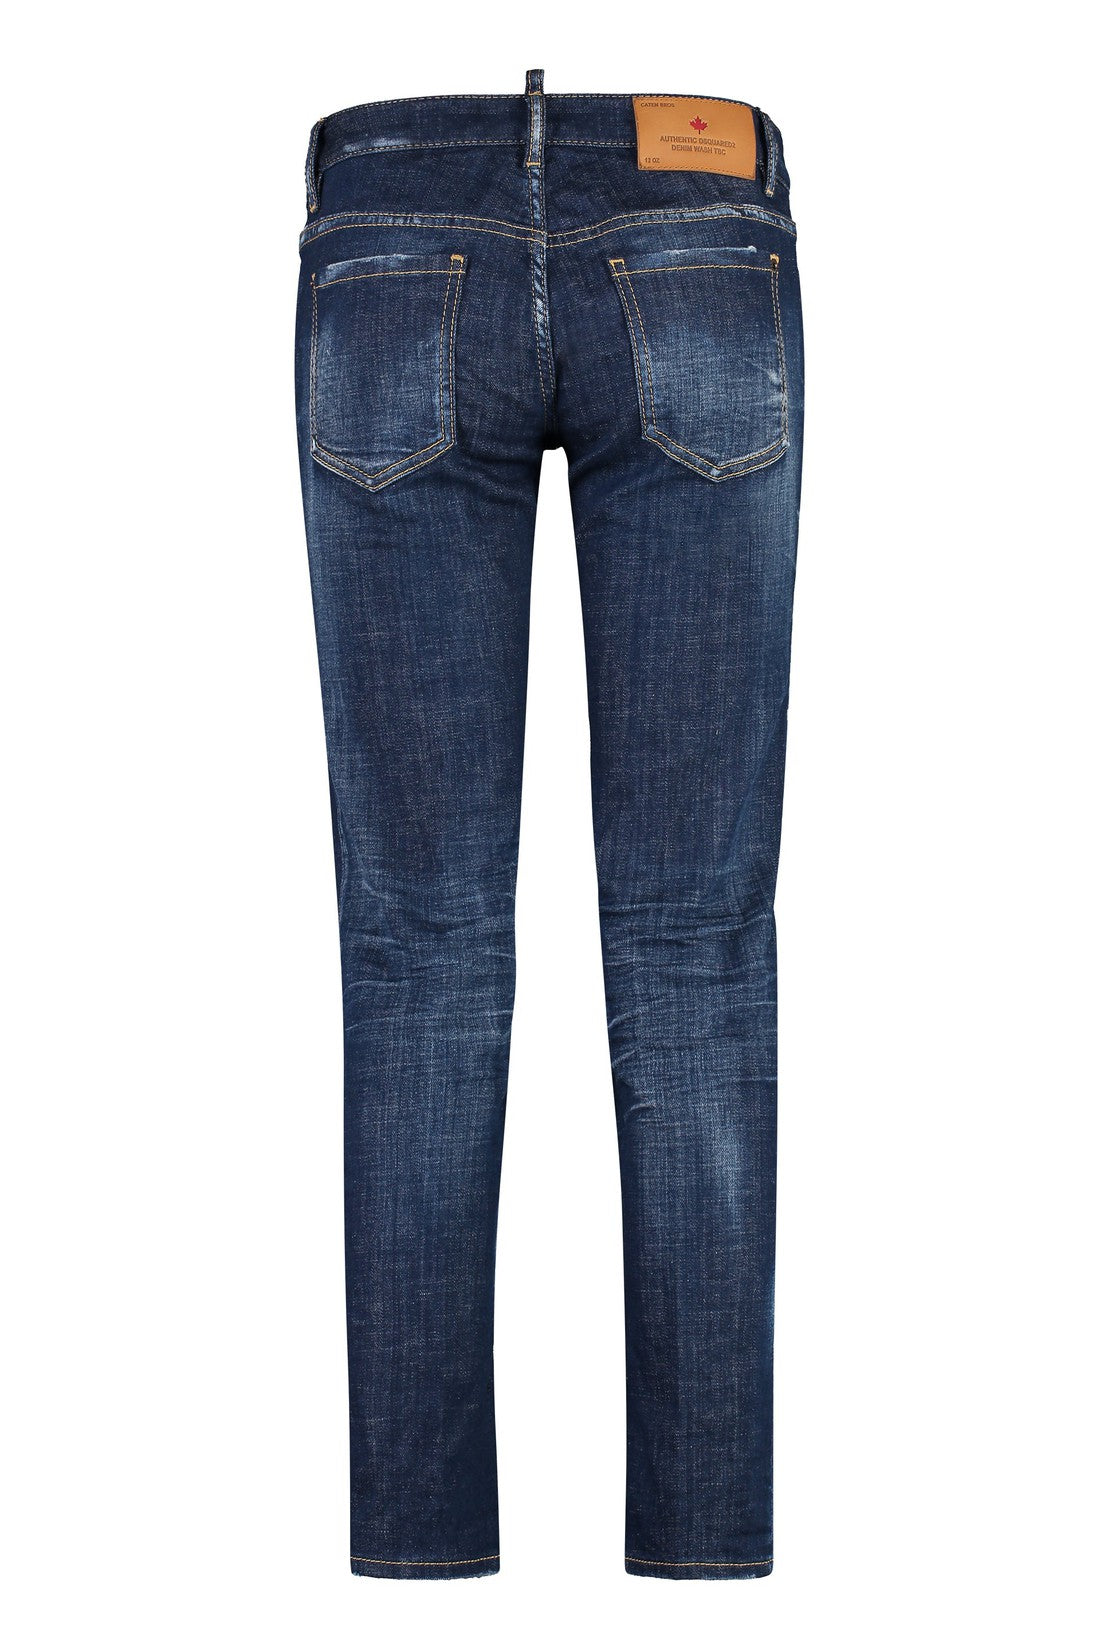 Dsquared2-OUTLET-SALE-Jennifer straight leg jeans-ARCHIVIST